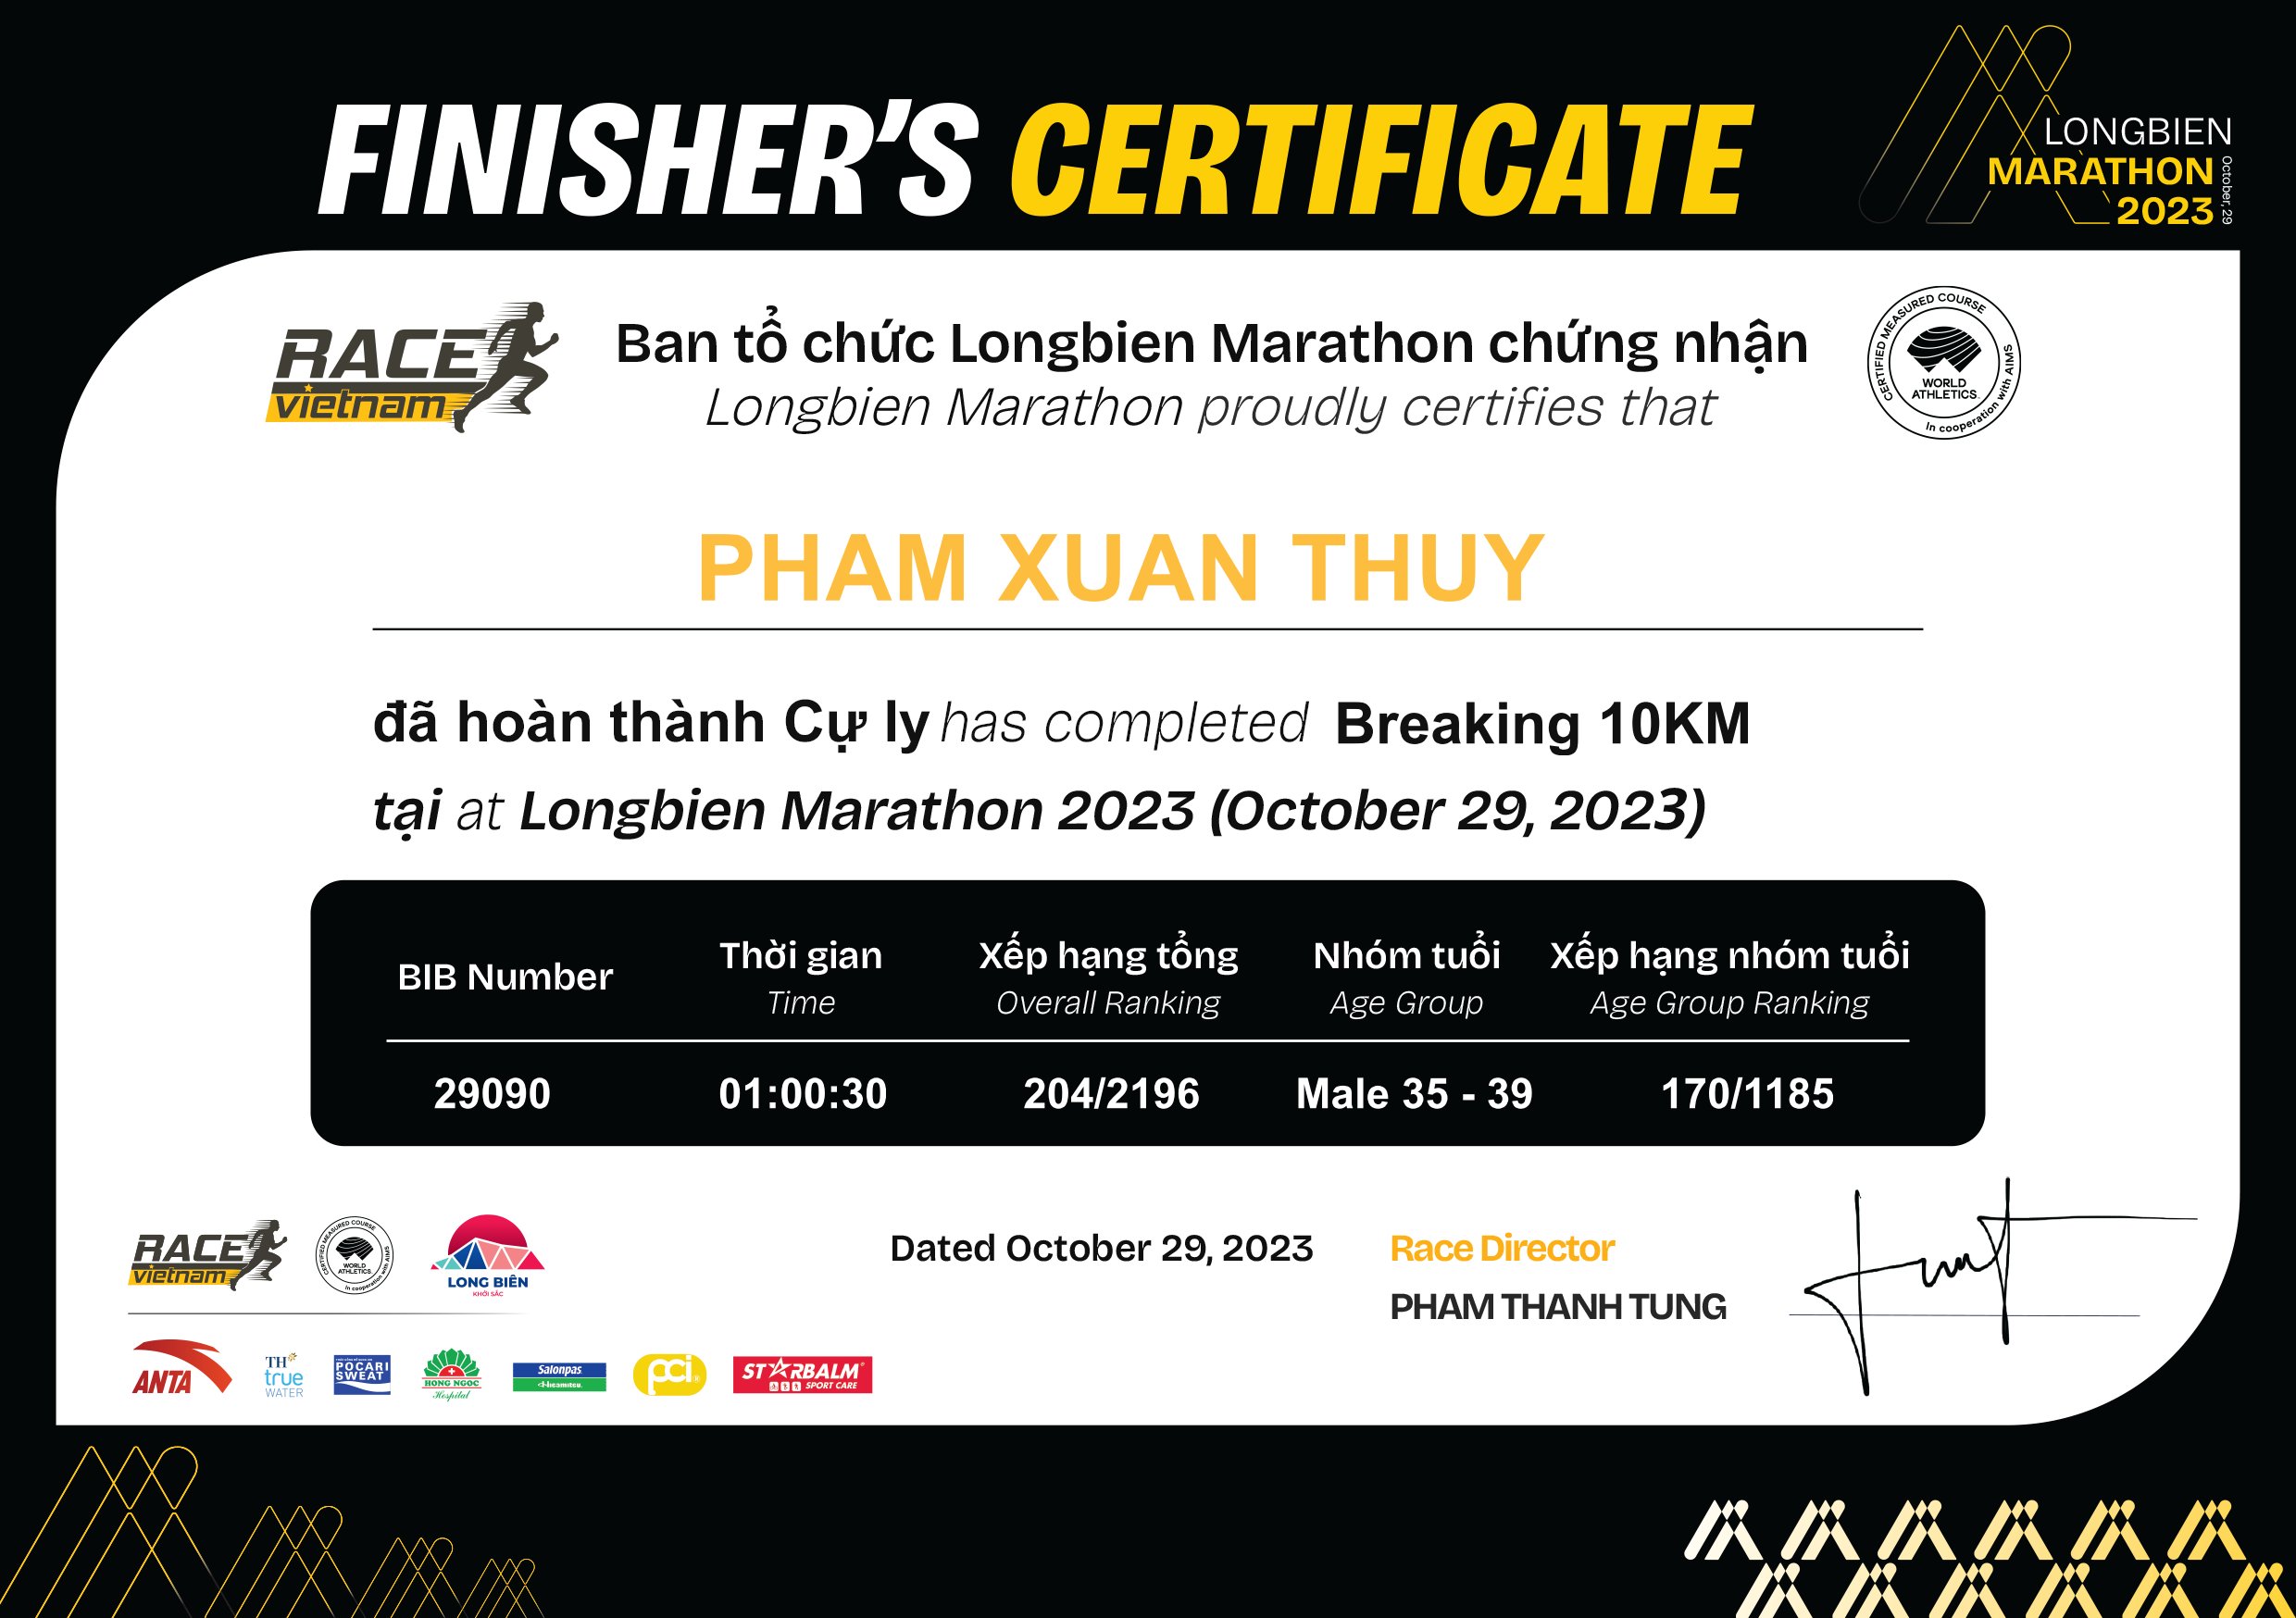 29090 - Pham Xuan Thuy